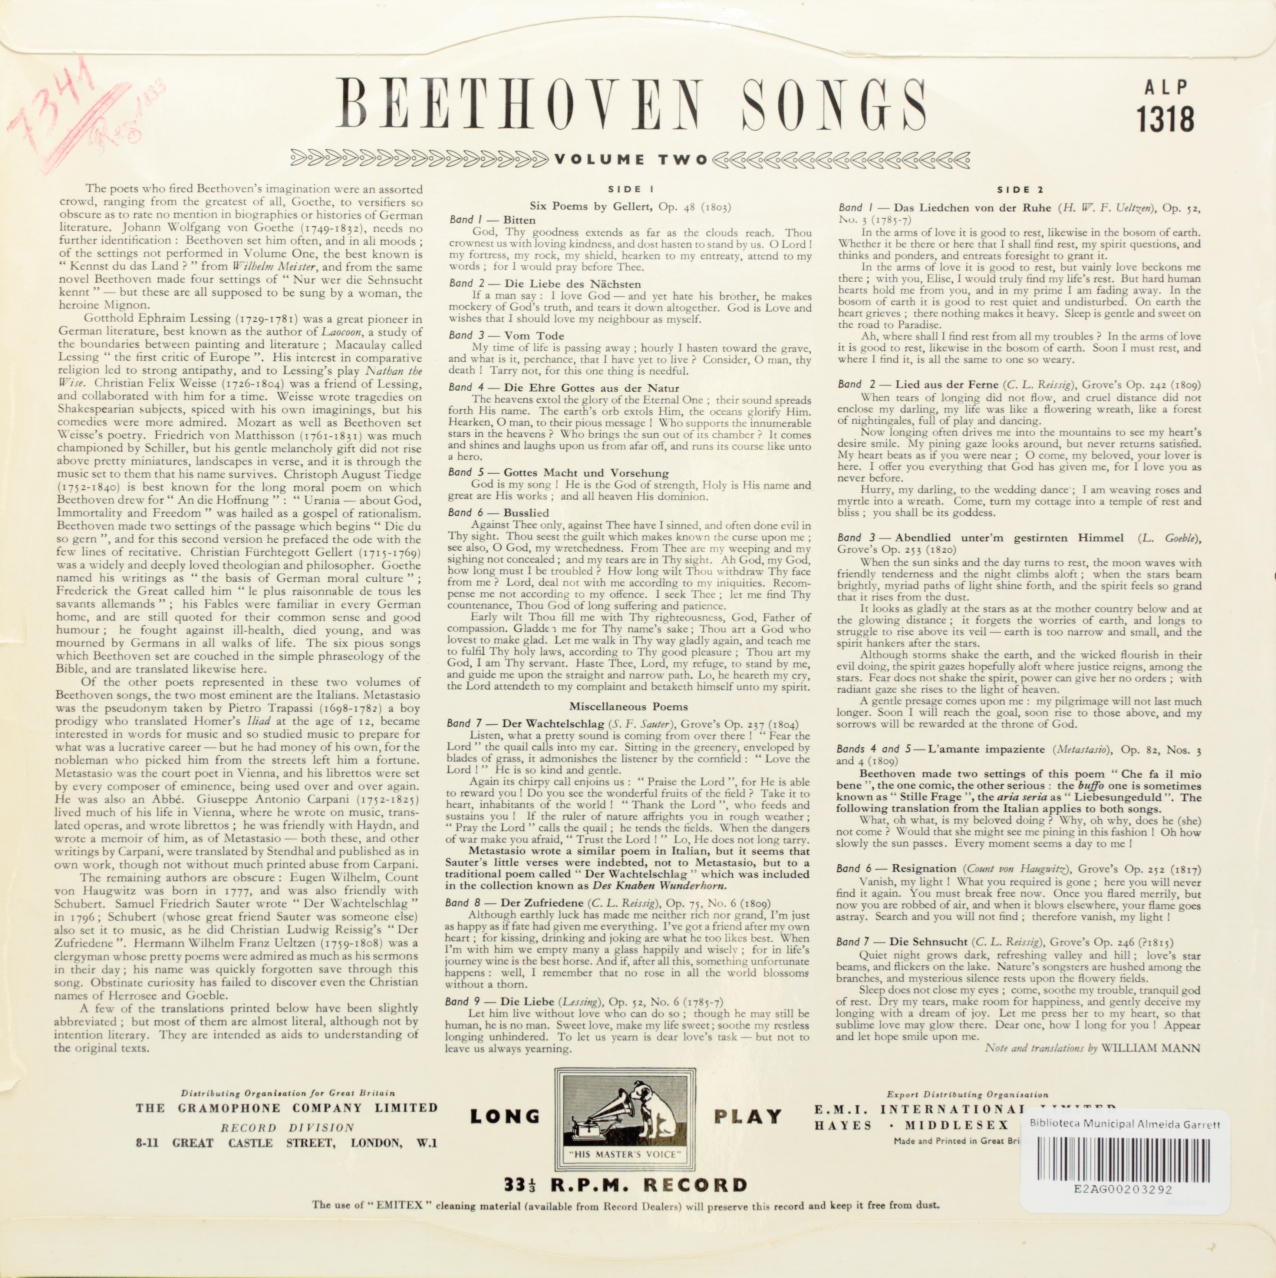 Beethoven: Songs - Volume II